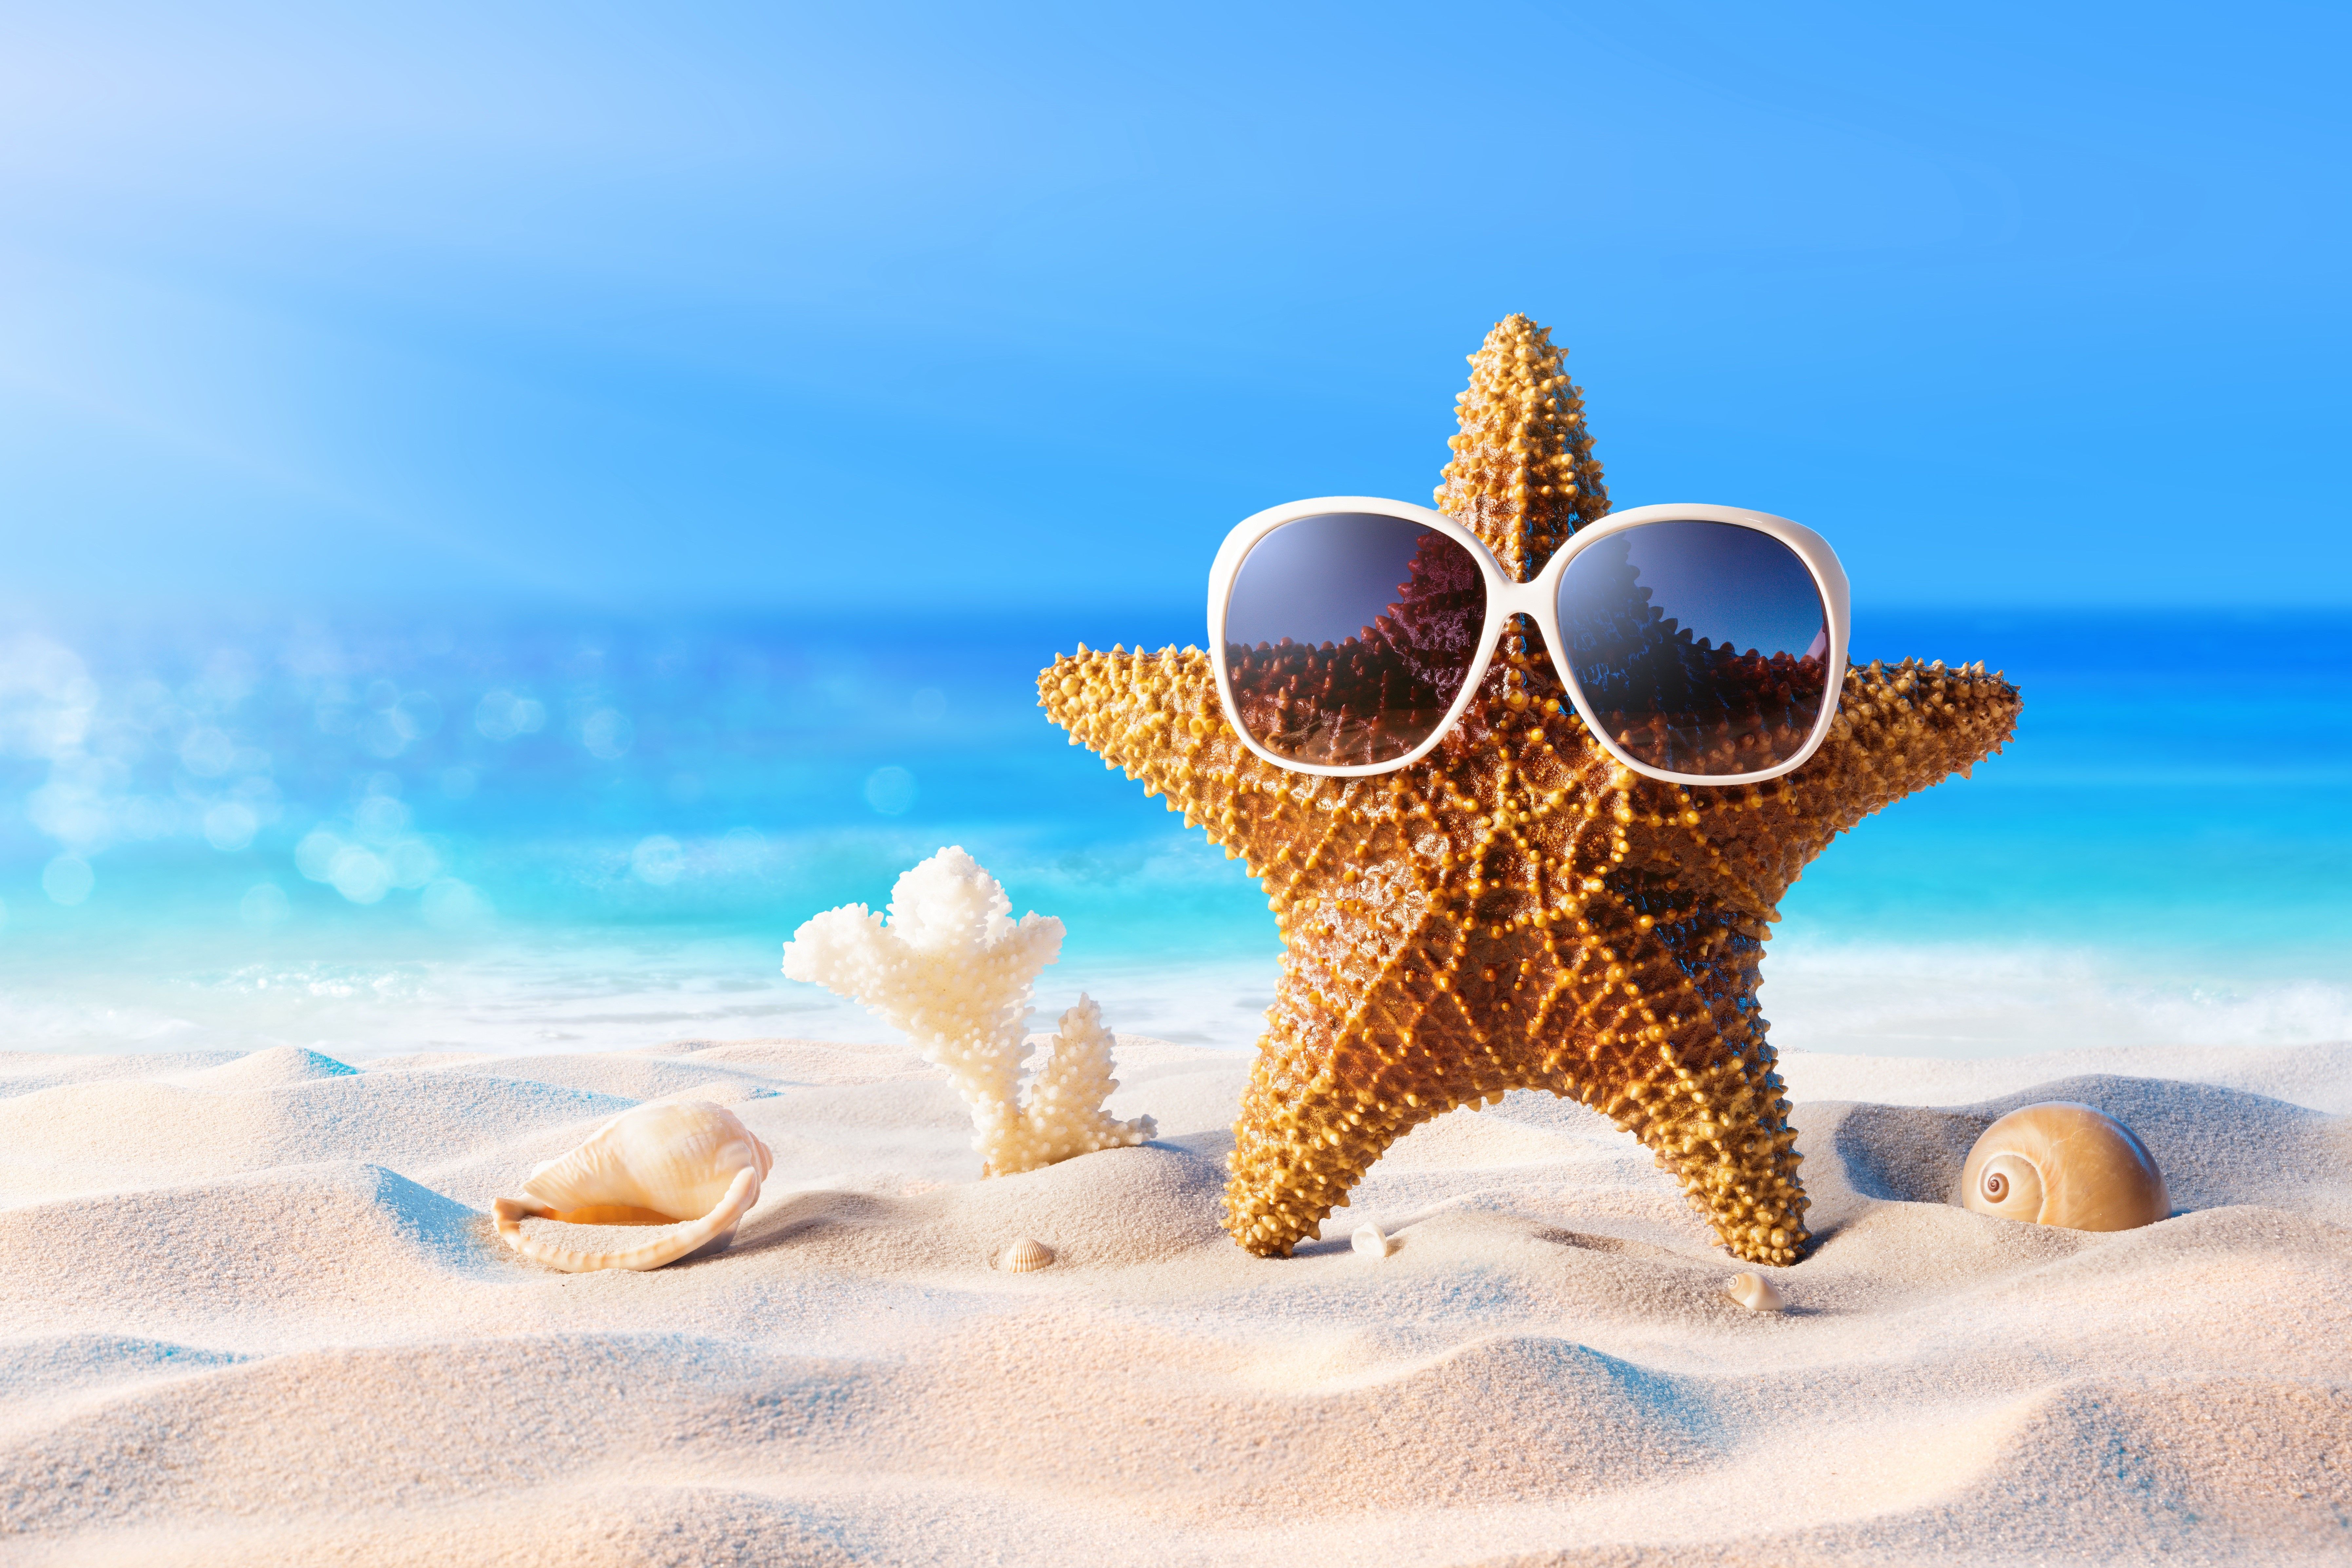 Starfish wearing sunglasses on a beach - Starfish